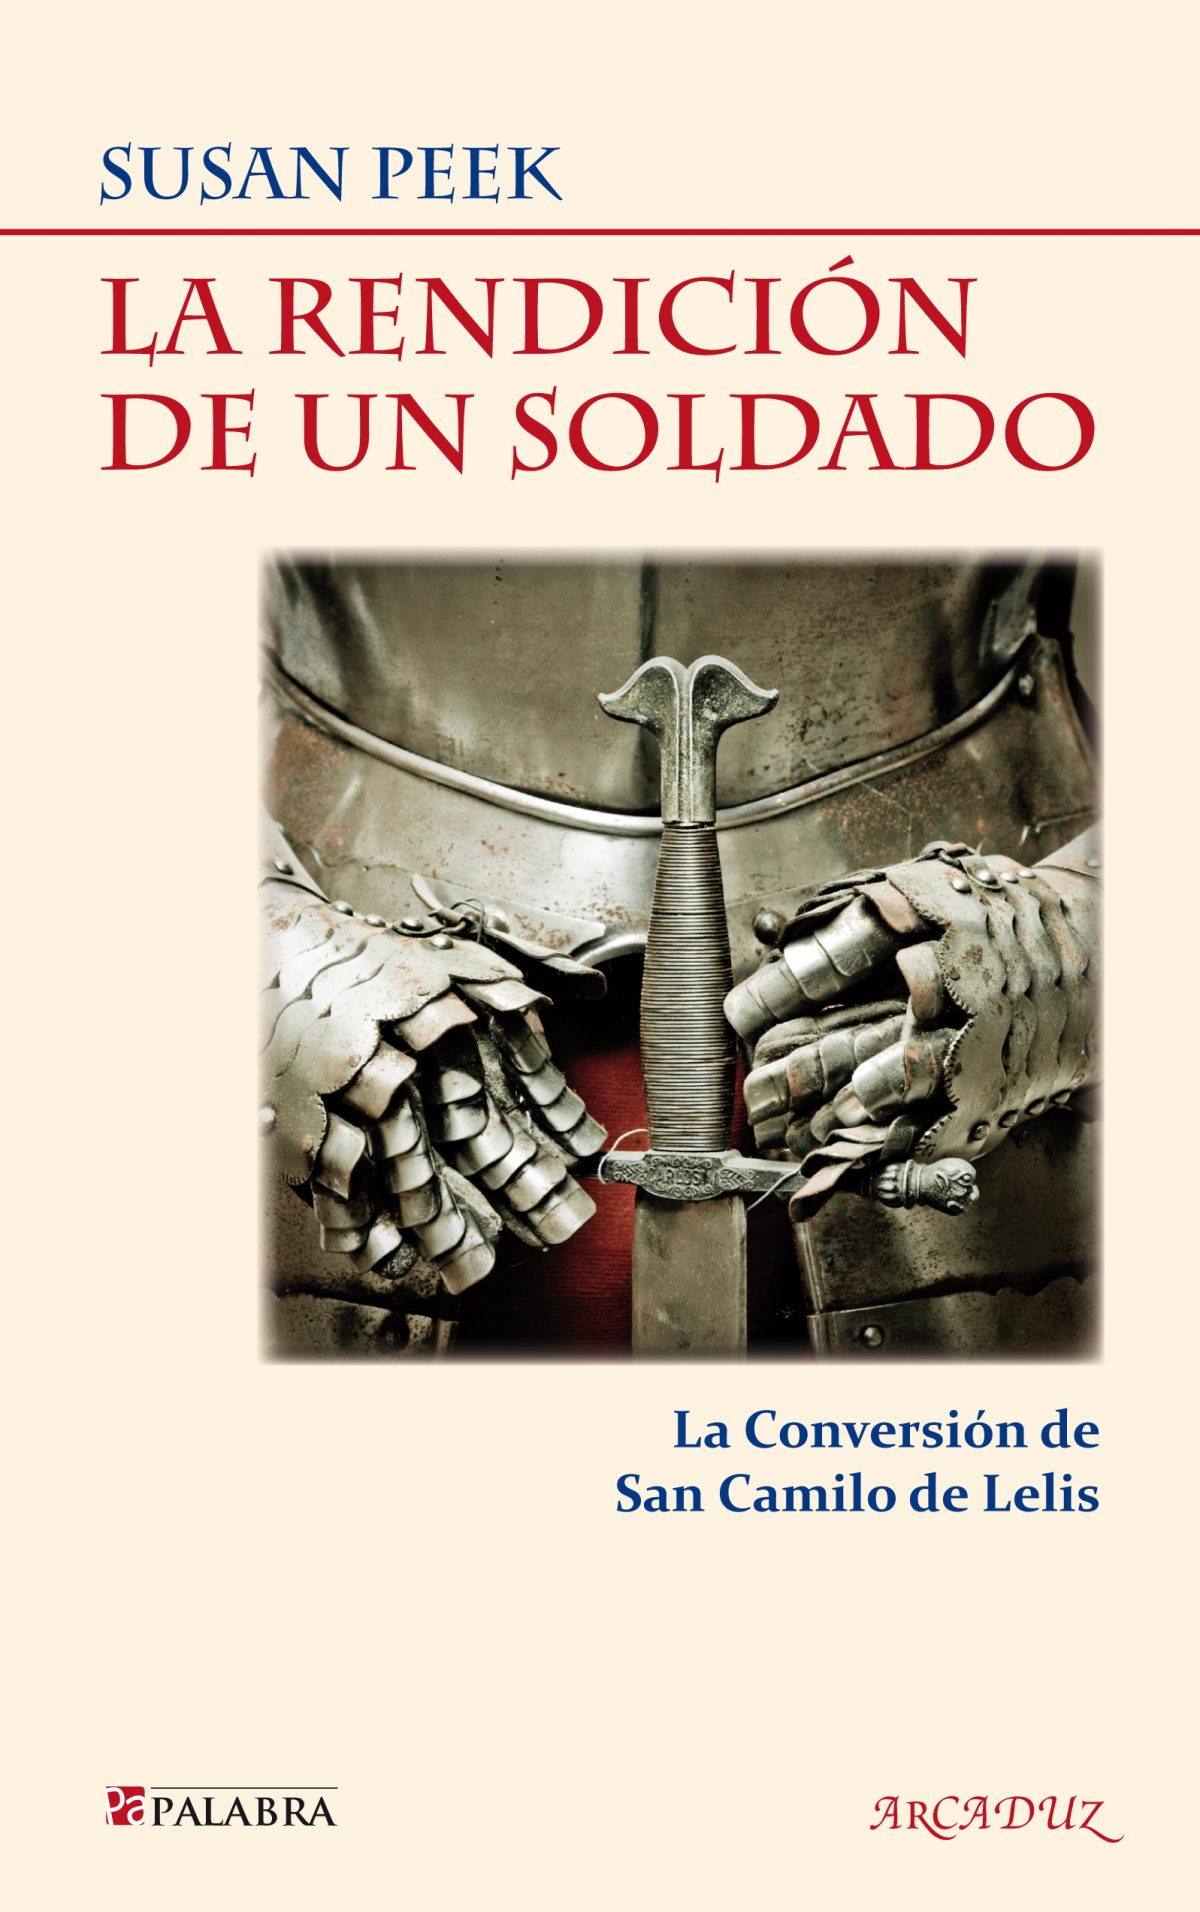 “La rendición de un soldado”, nueva biografía de San Camilo de Lellis